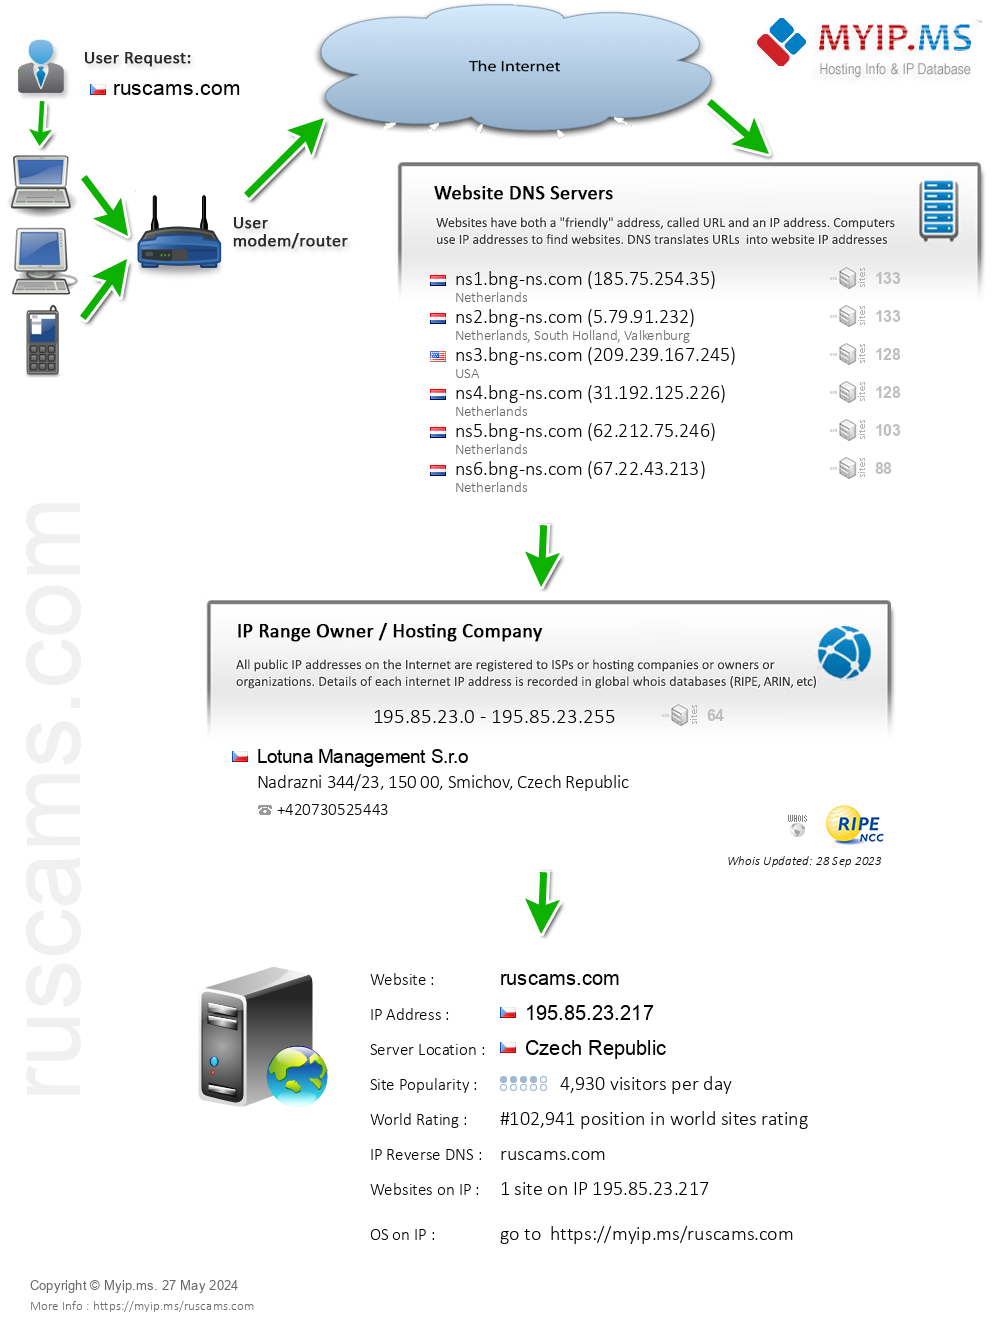 Ruscams.com - Website Hosting Visual IP Diagram